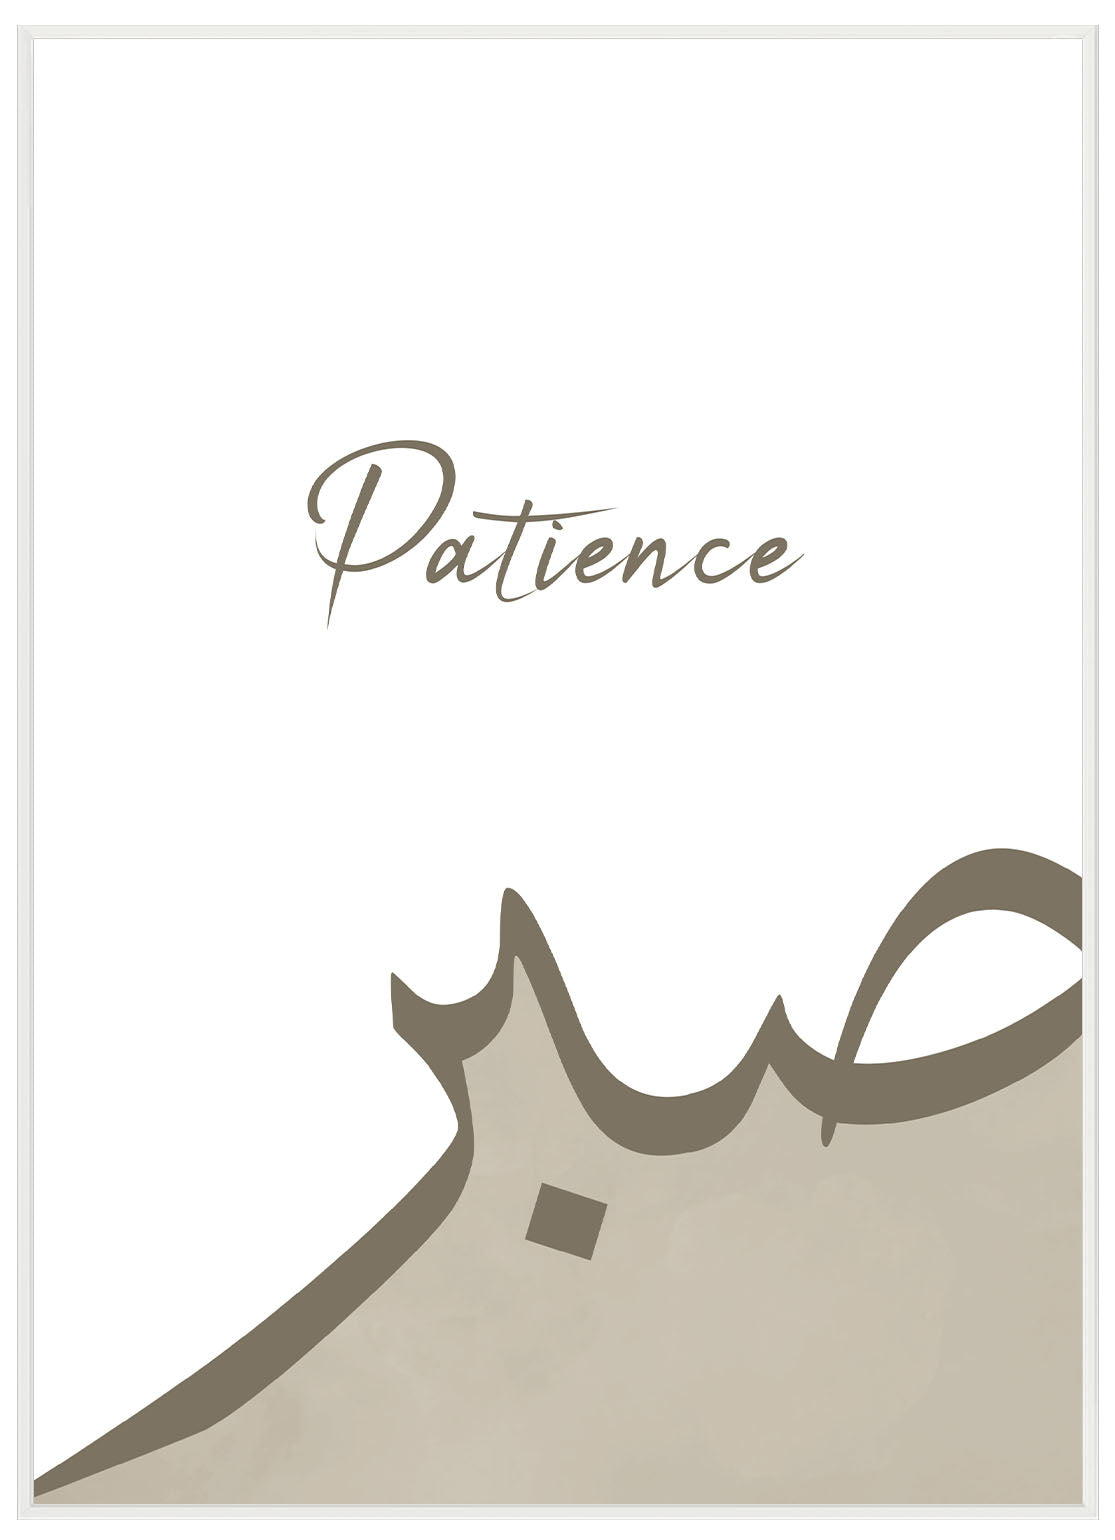 Patience No2